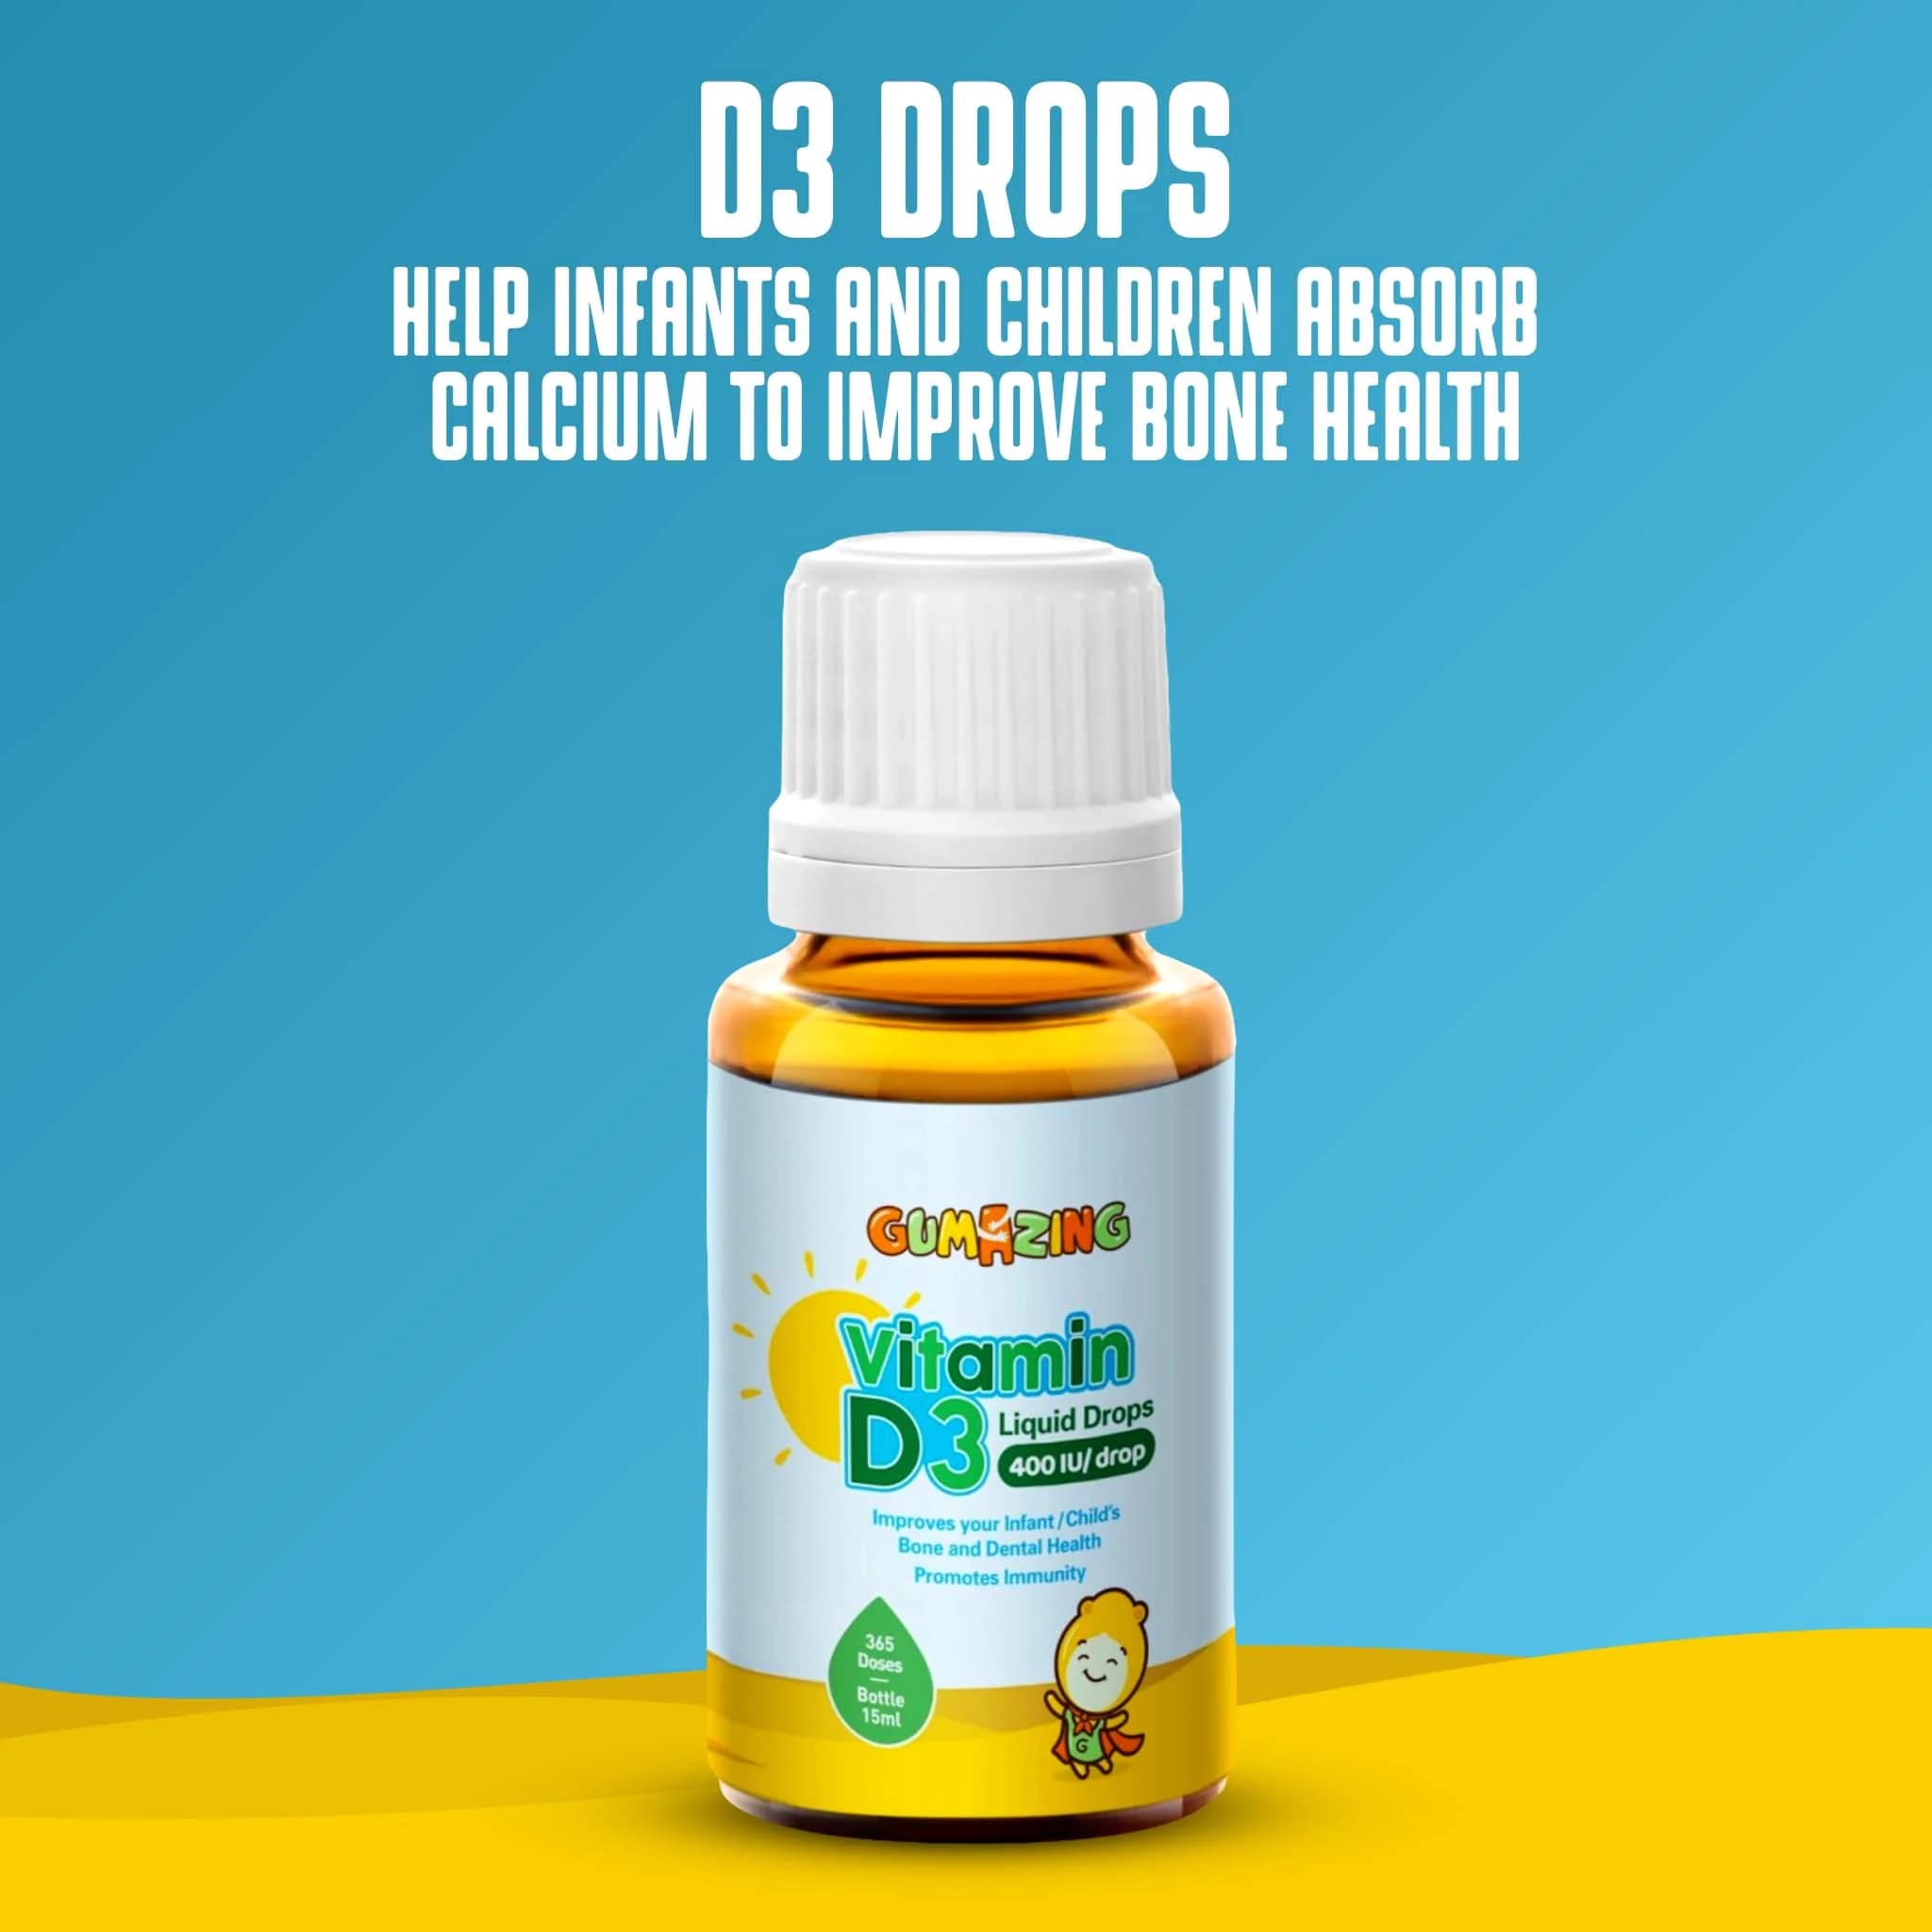 Gumazing Vitamin D3 Liquid Drops for Kids